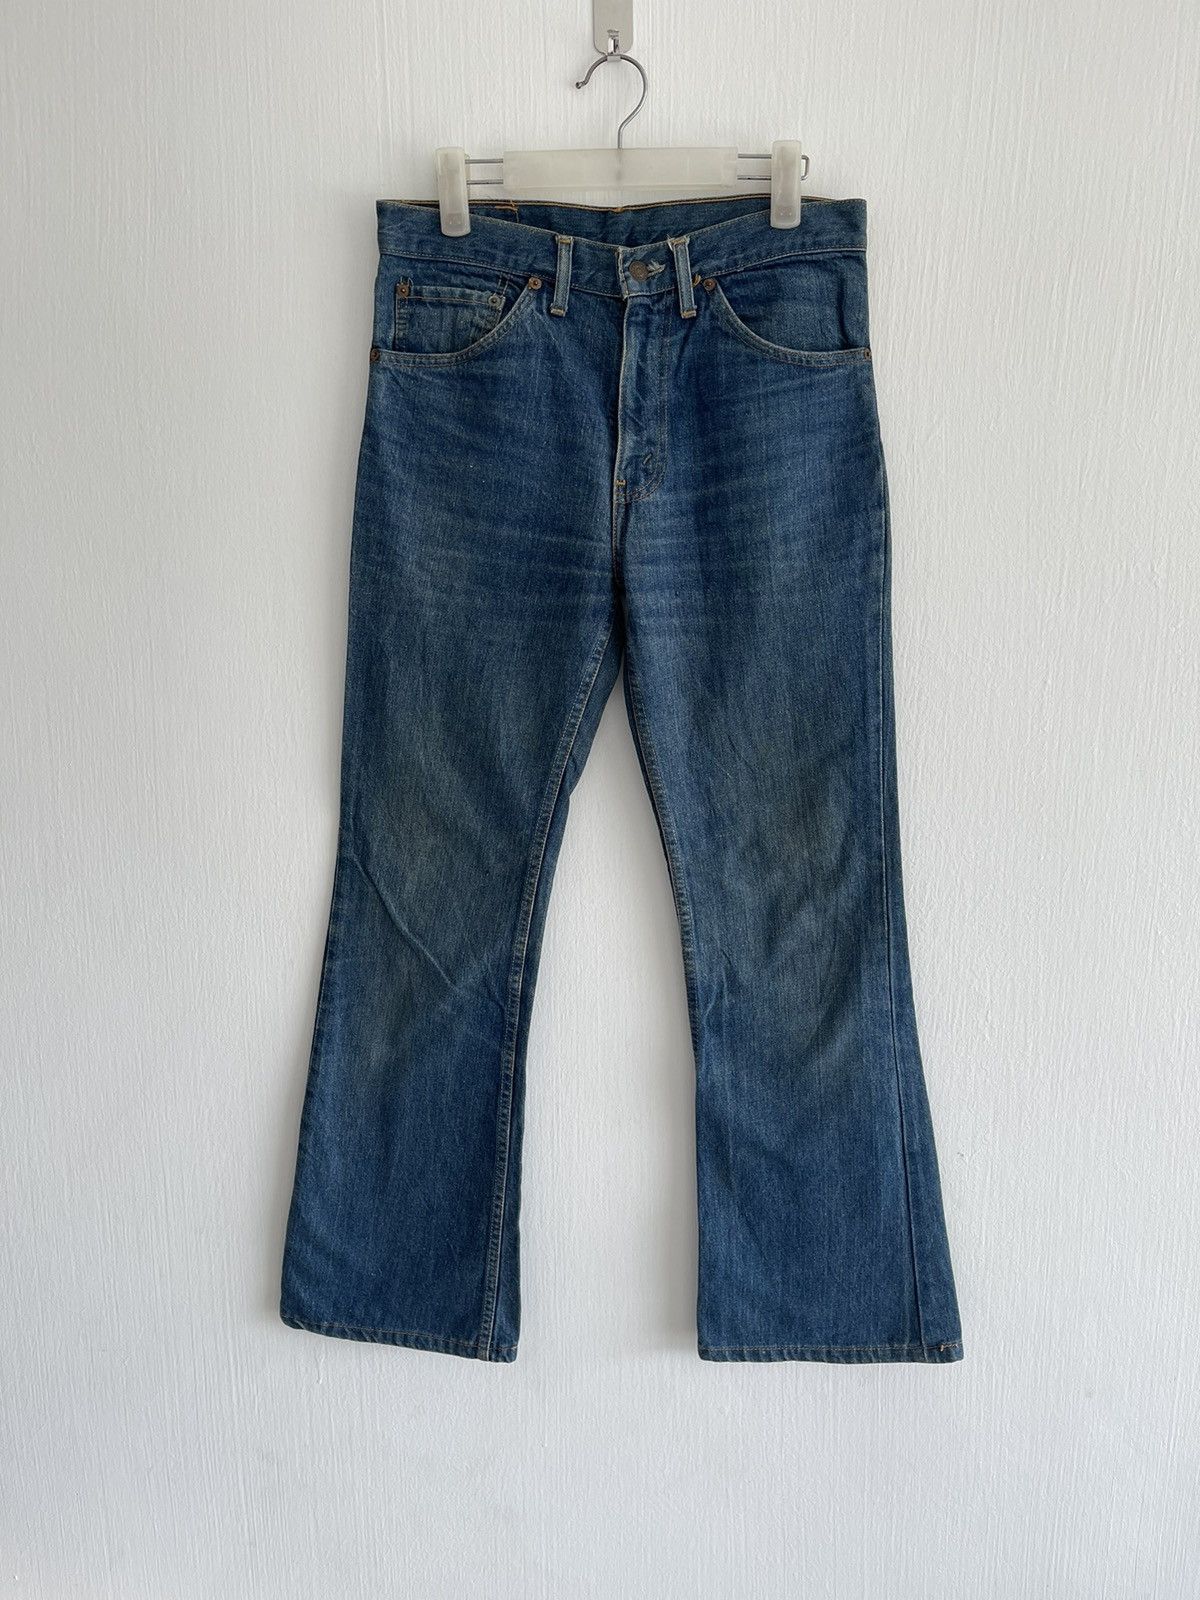 Vintage 70s Levis 507-0217 flare jeans - 1